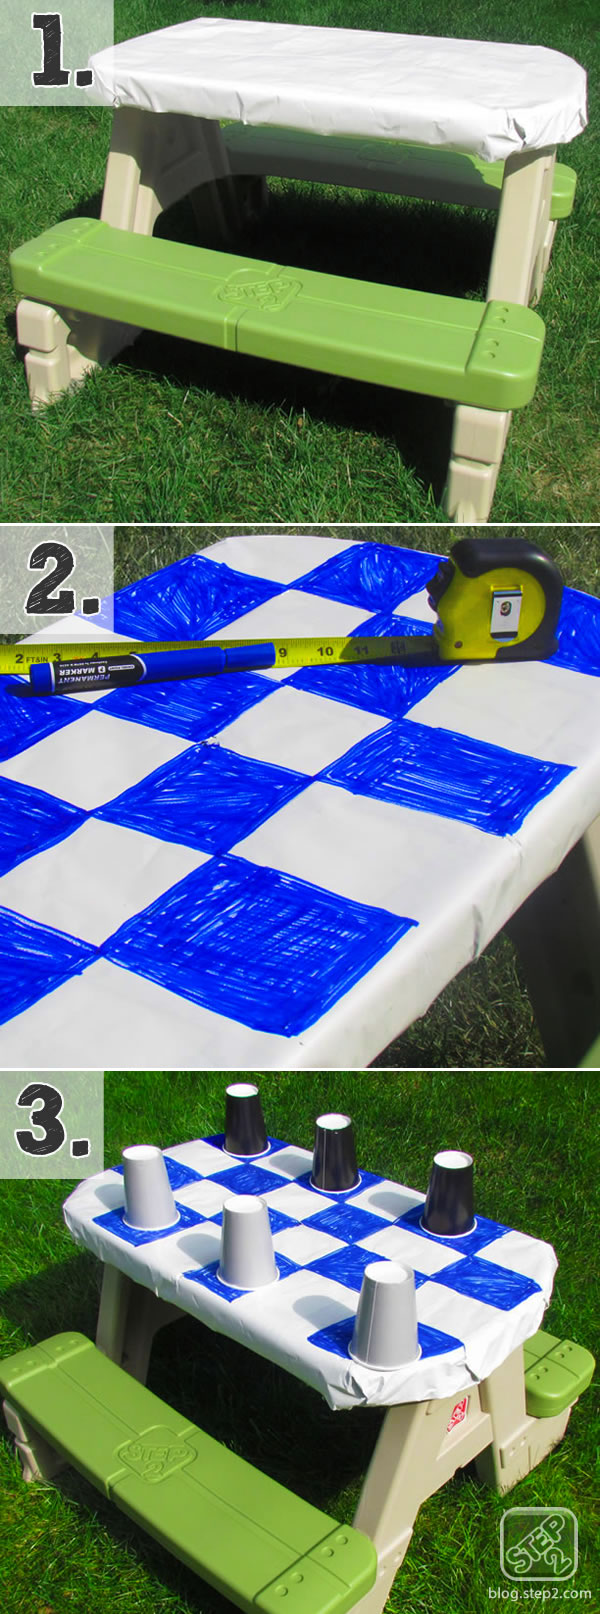 checkerboard tutorial